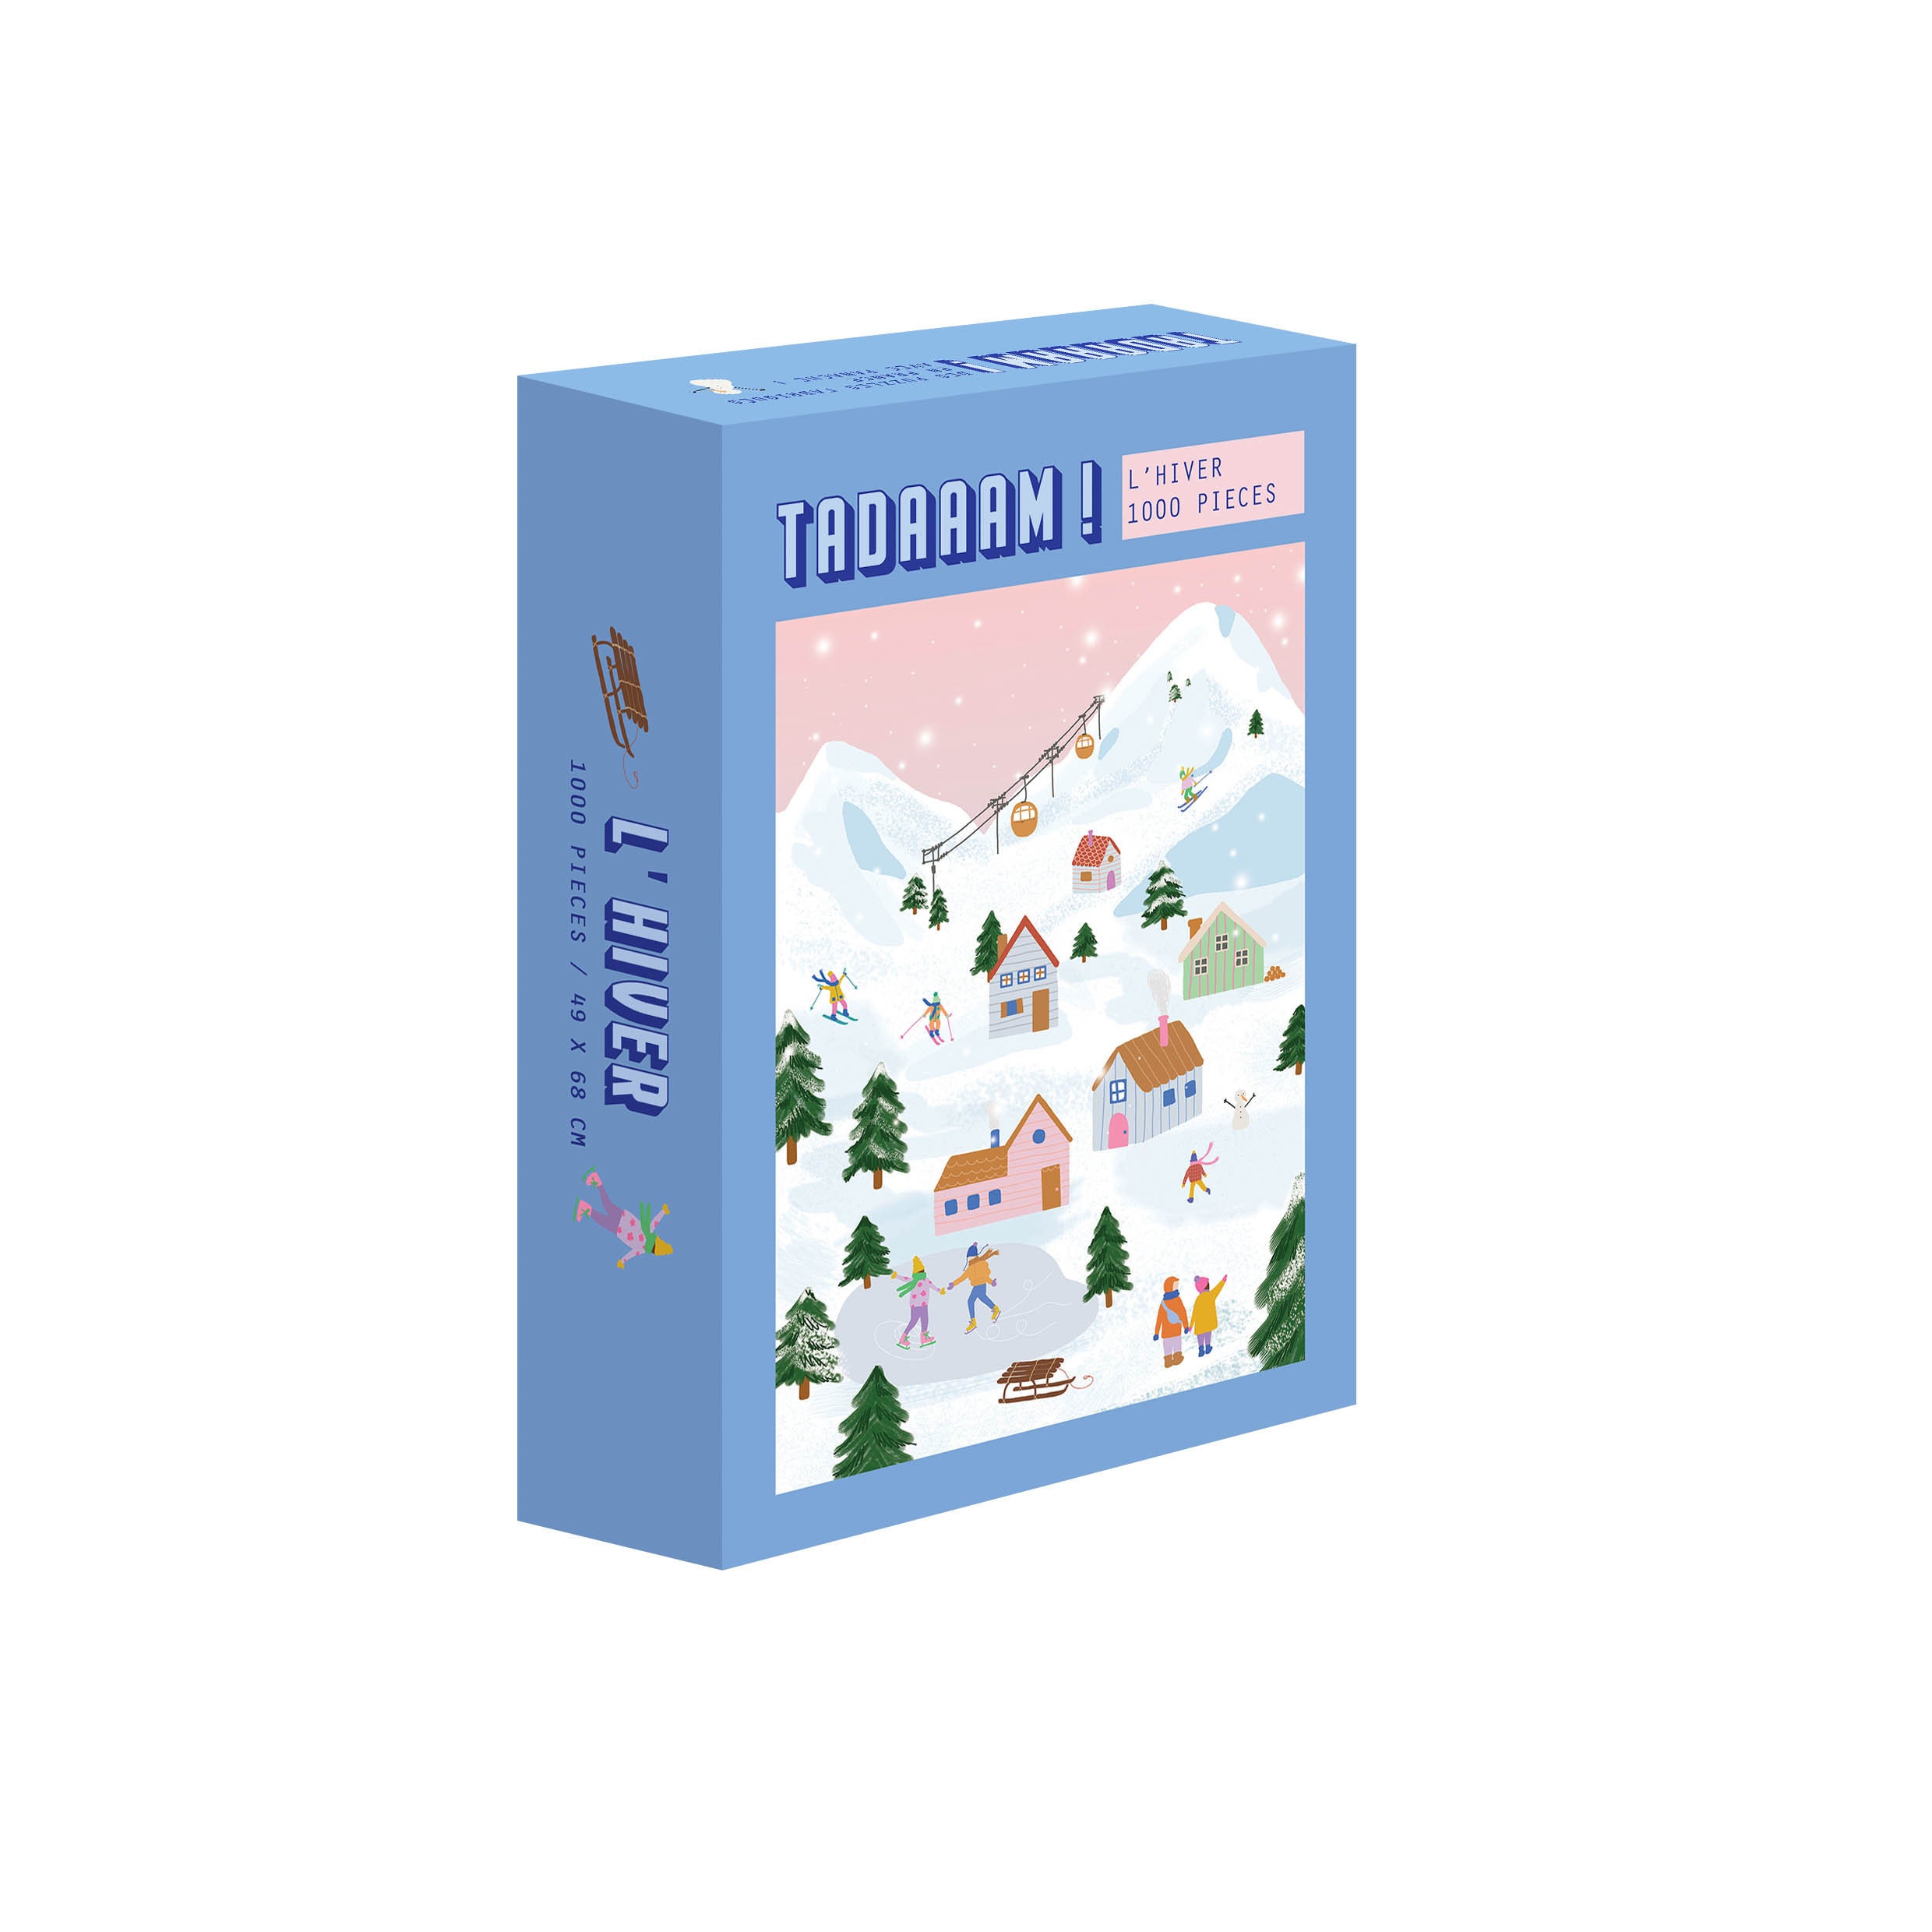 Snow Premium Puzzle natalizio per adulti da 1000 pezzi a tema invernale  Marca: Cloudberries -  Italia